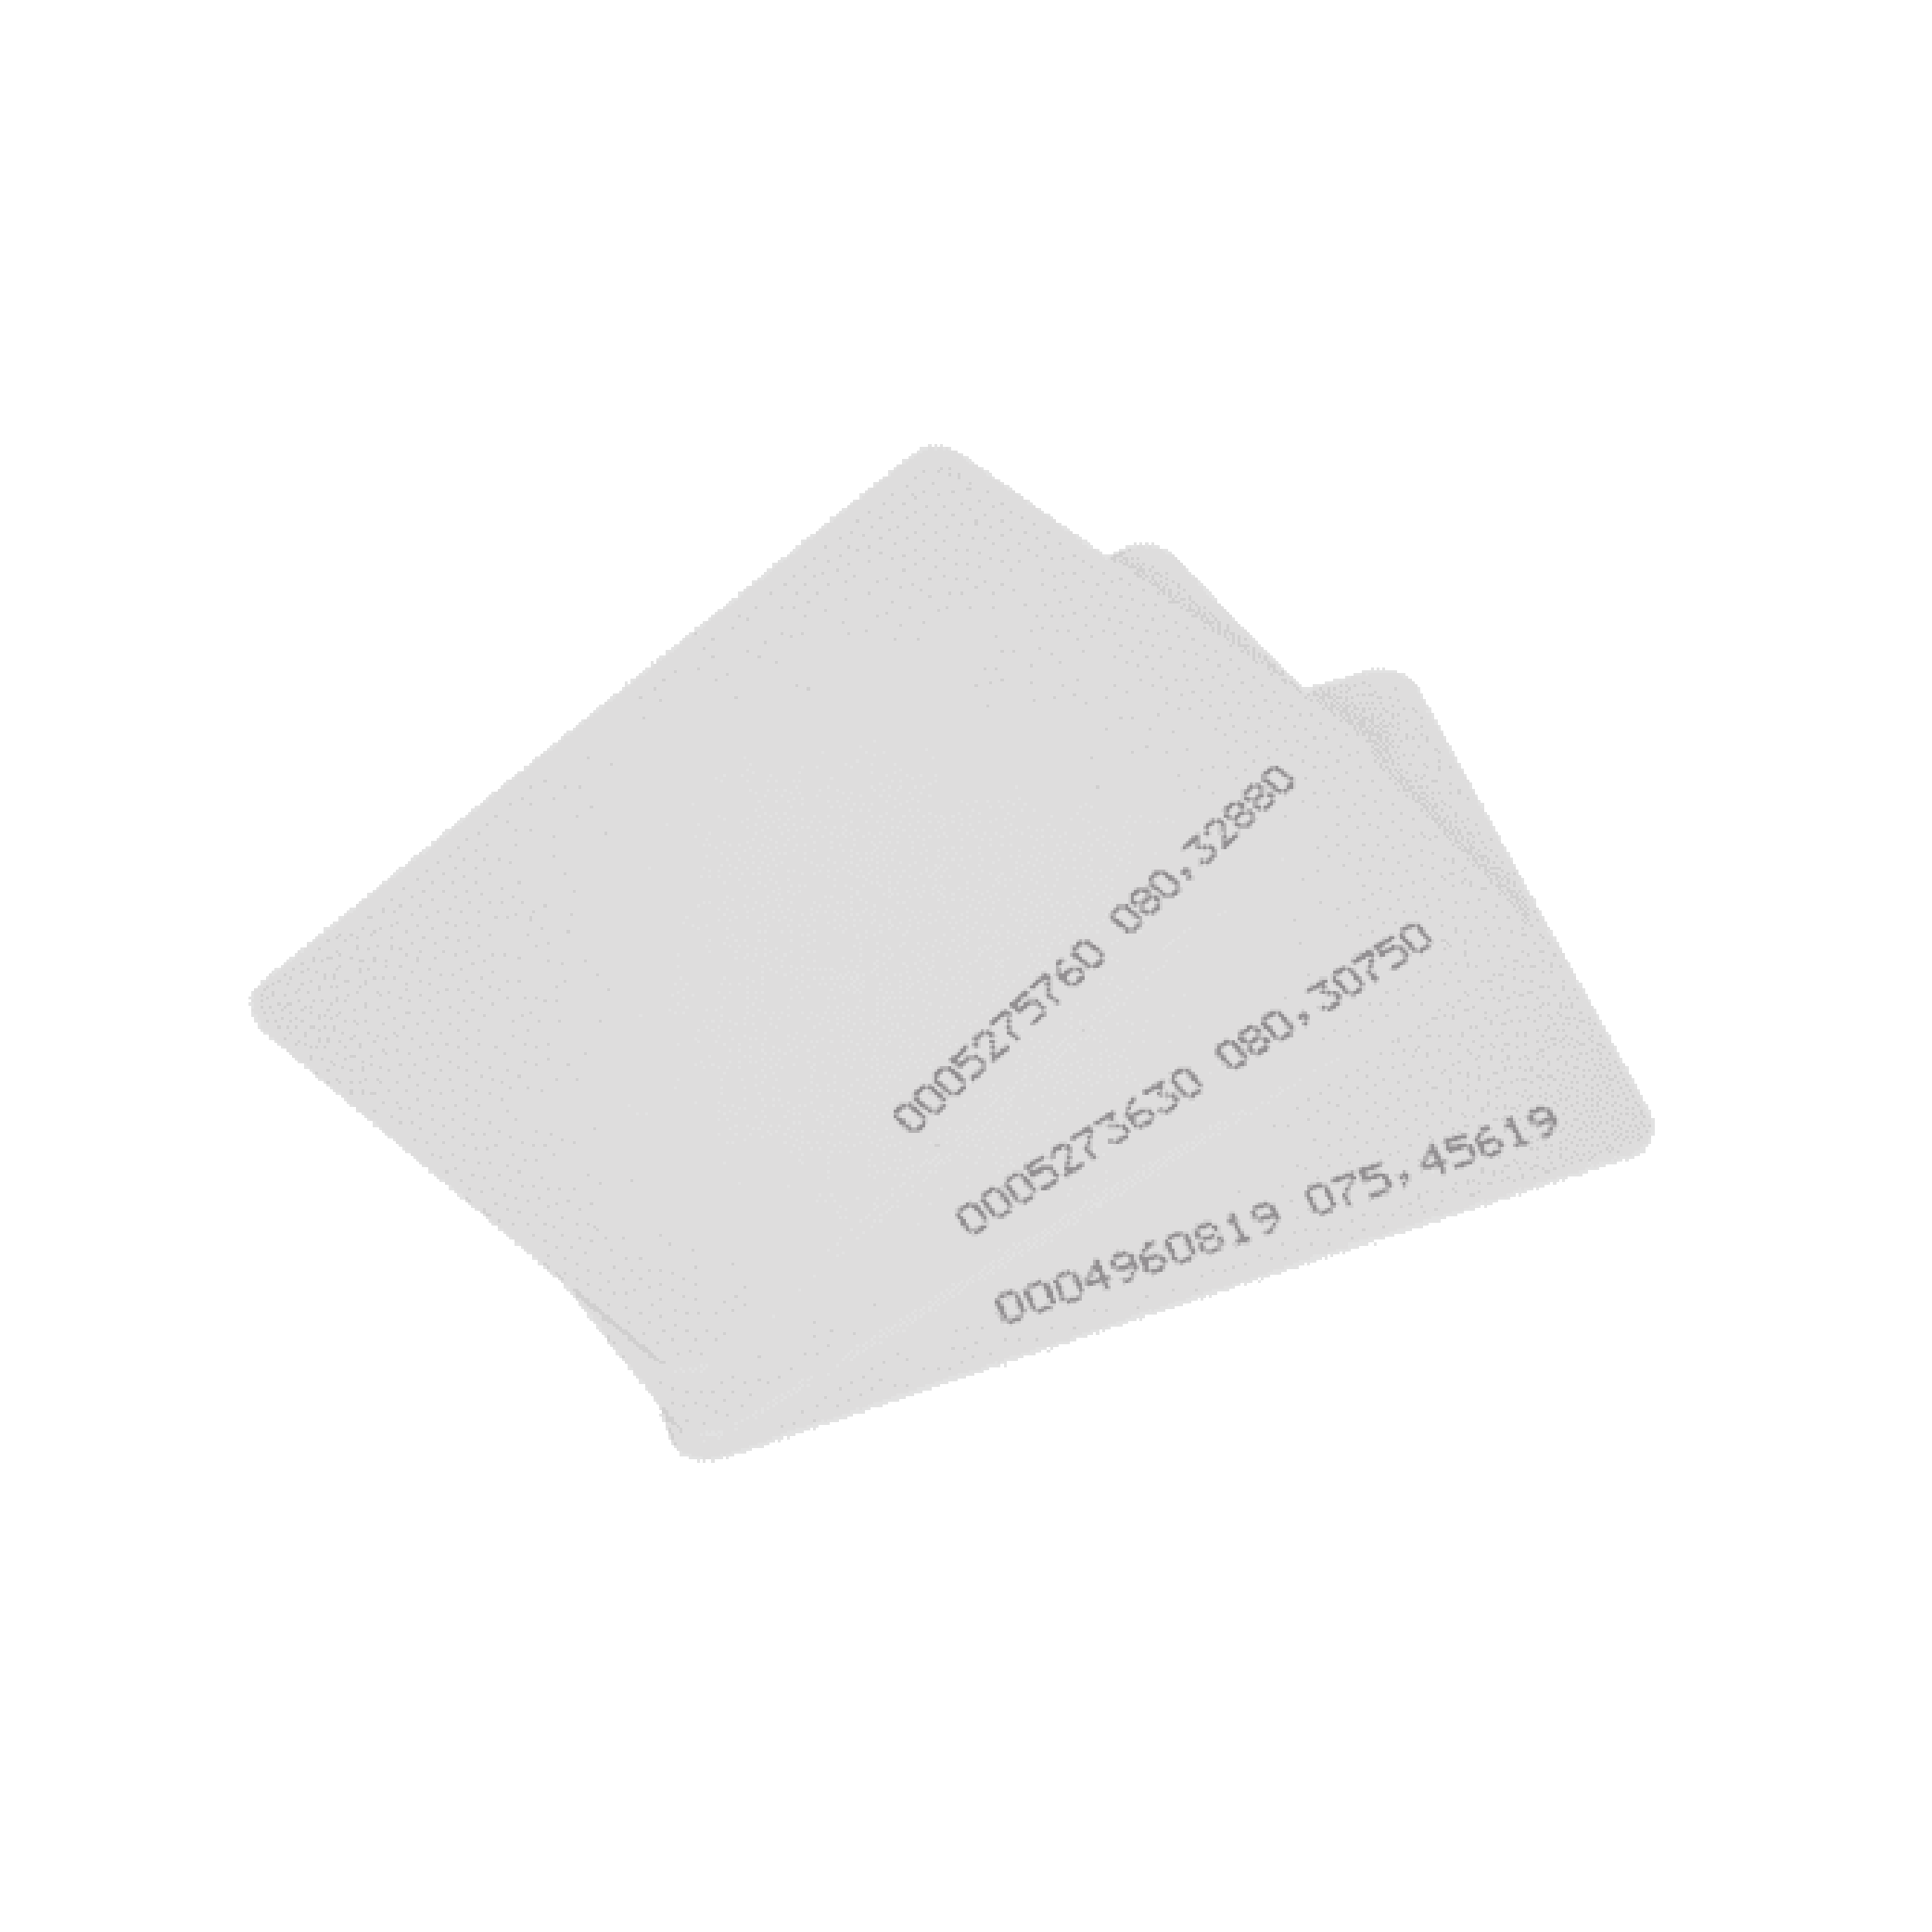 Tarjeta RFID ID 125khz delgada con número impreso. sin perforación. imprimible. ID Thin Card.